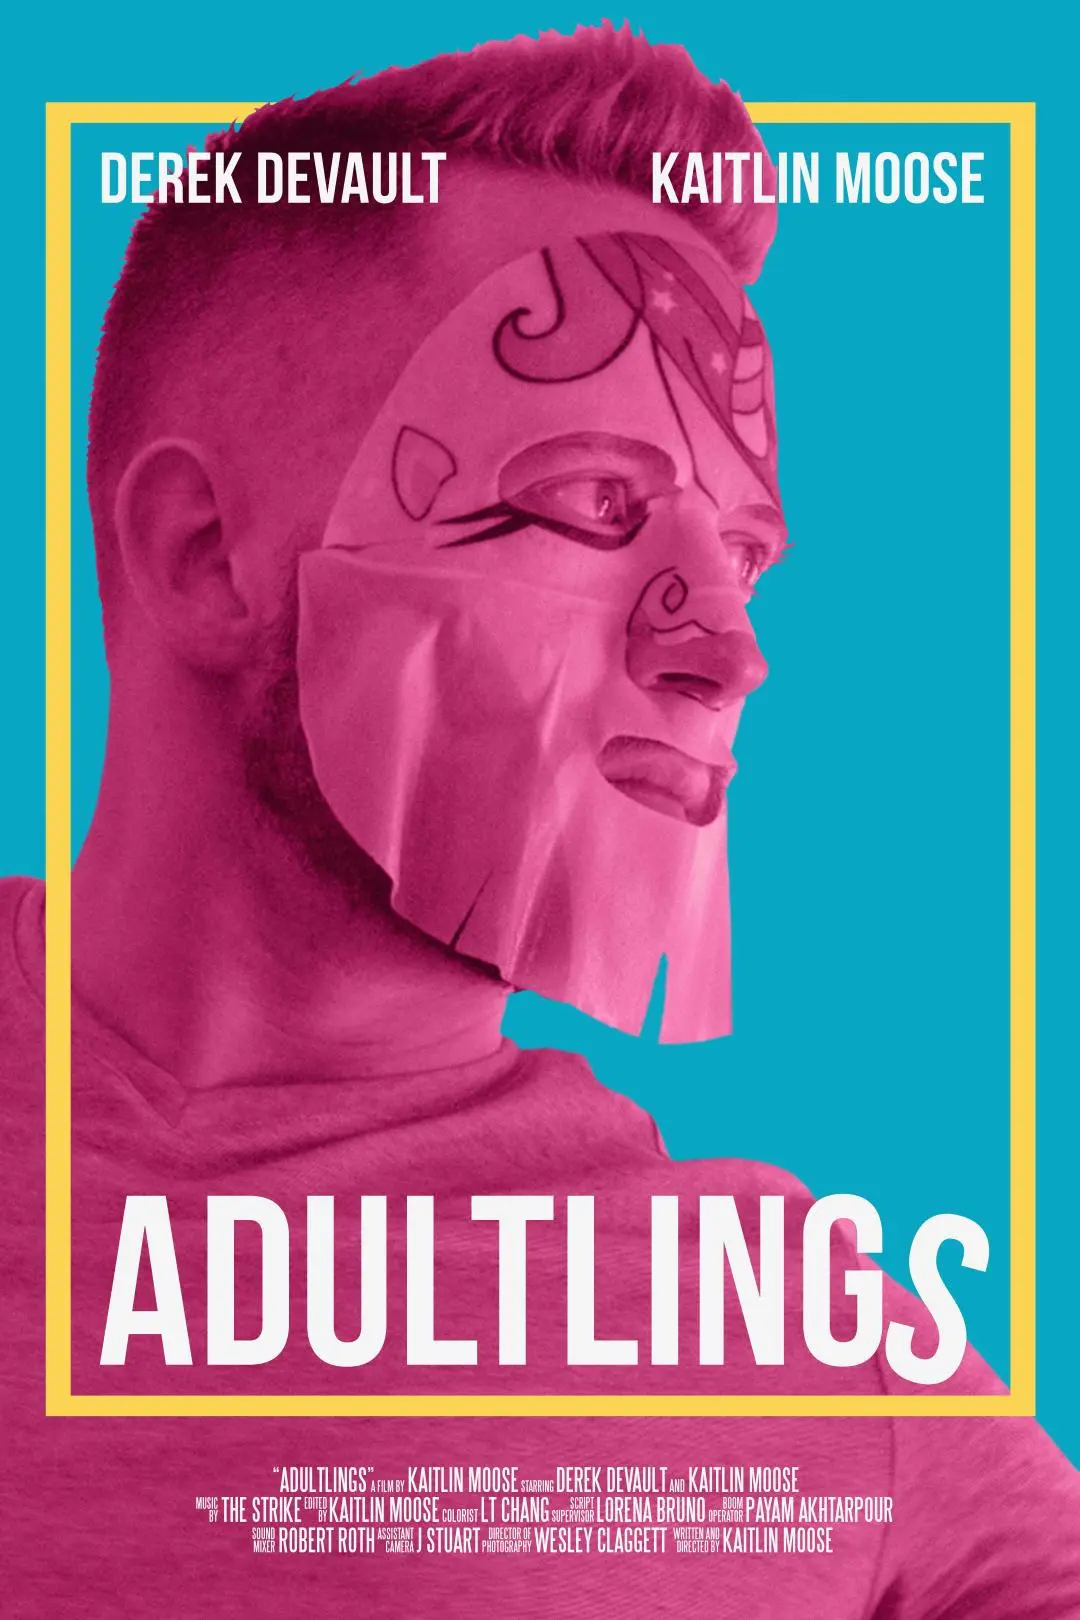 Adultlings_peliplat